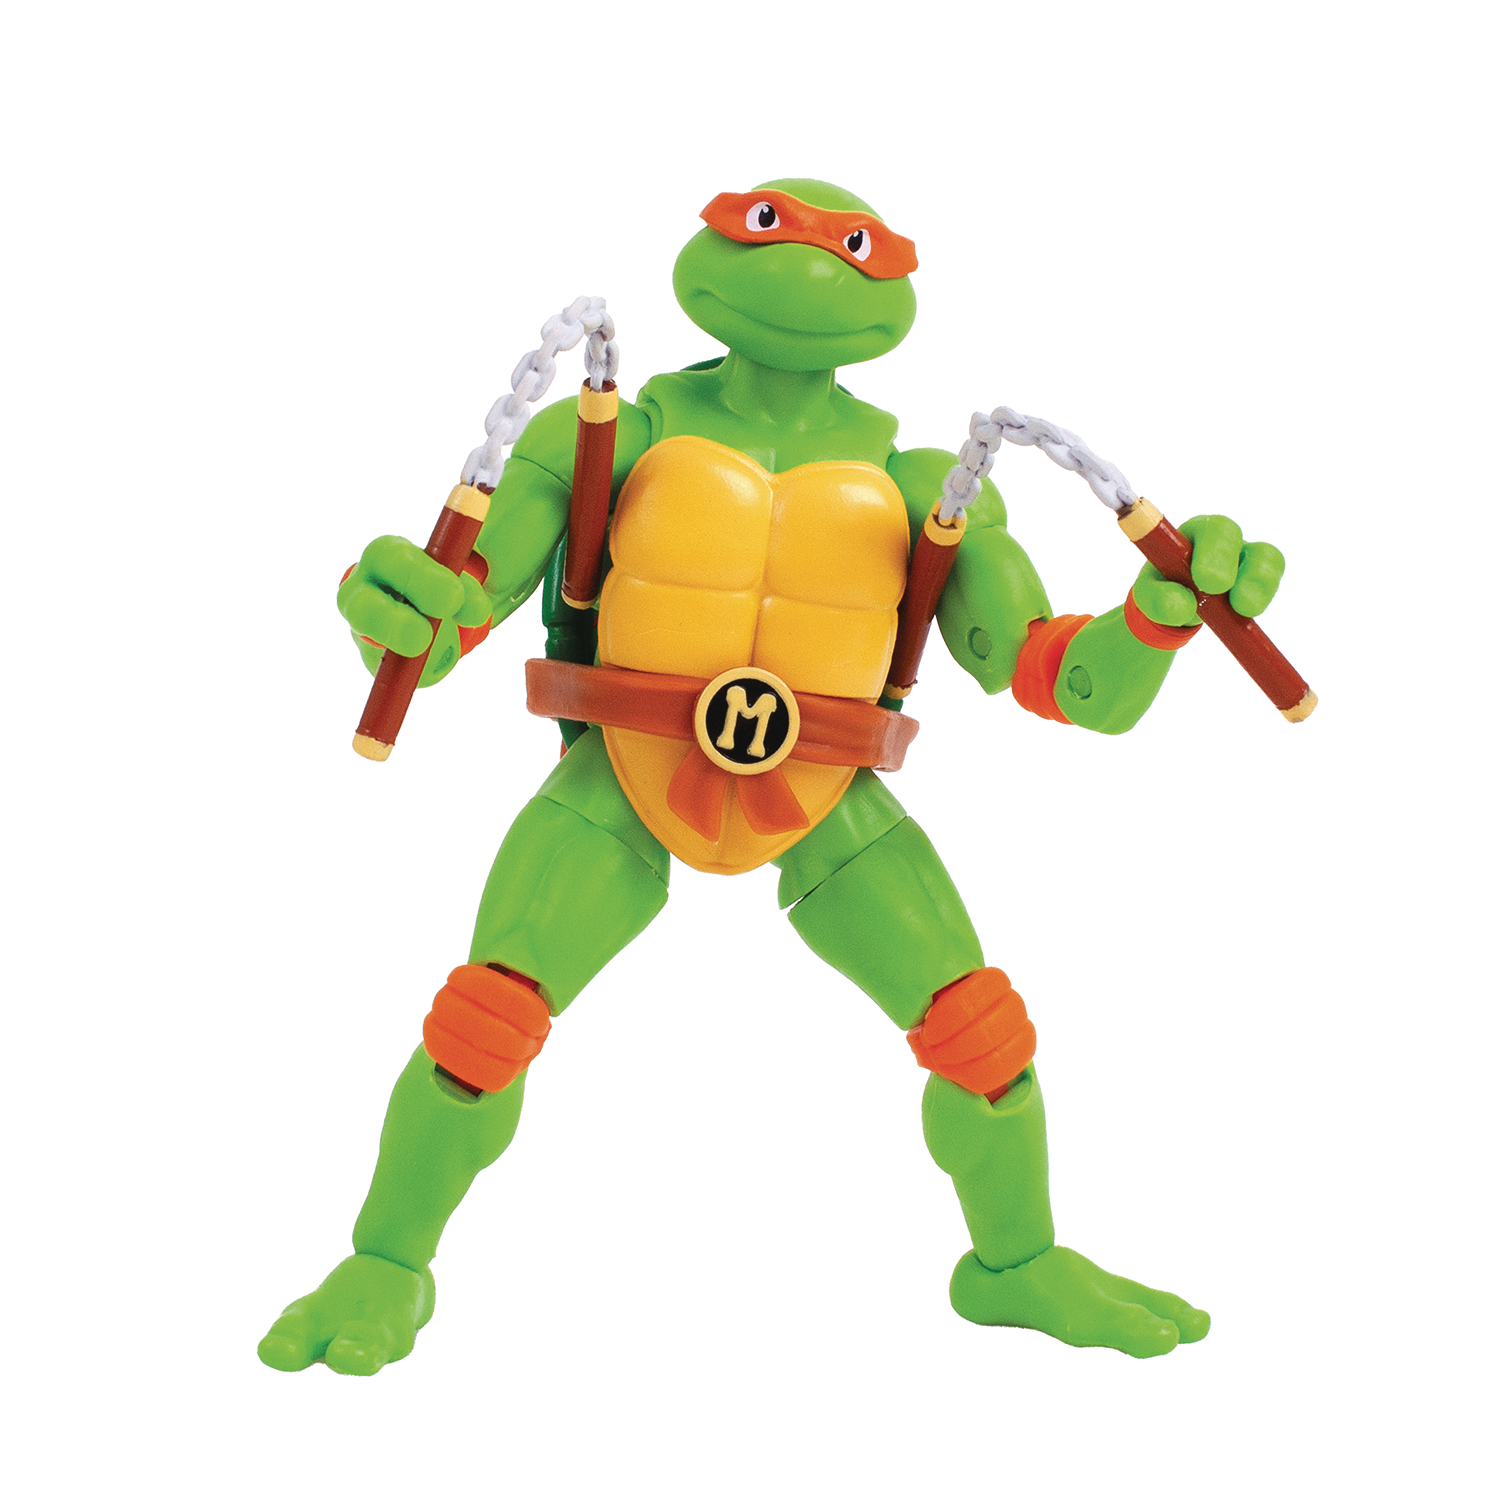 BST AXN Teenage Mutant Ninja Turtles Michelangelo 5 Inch Action Figure